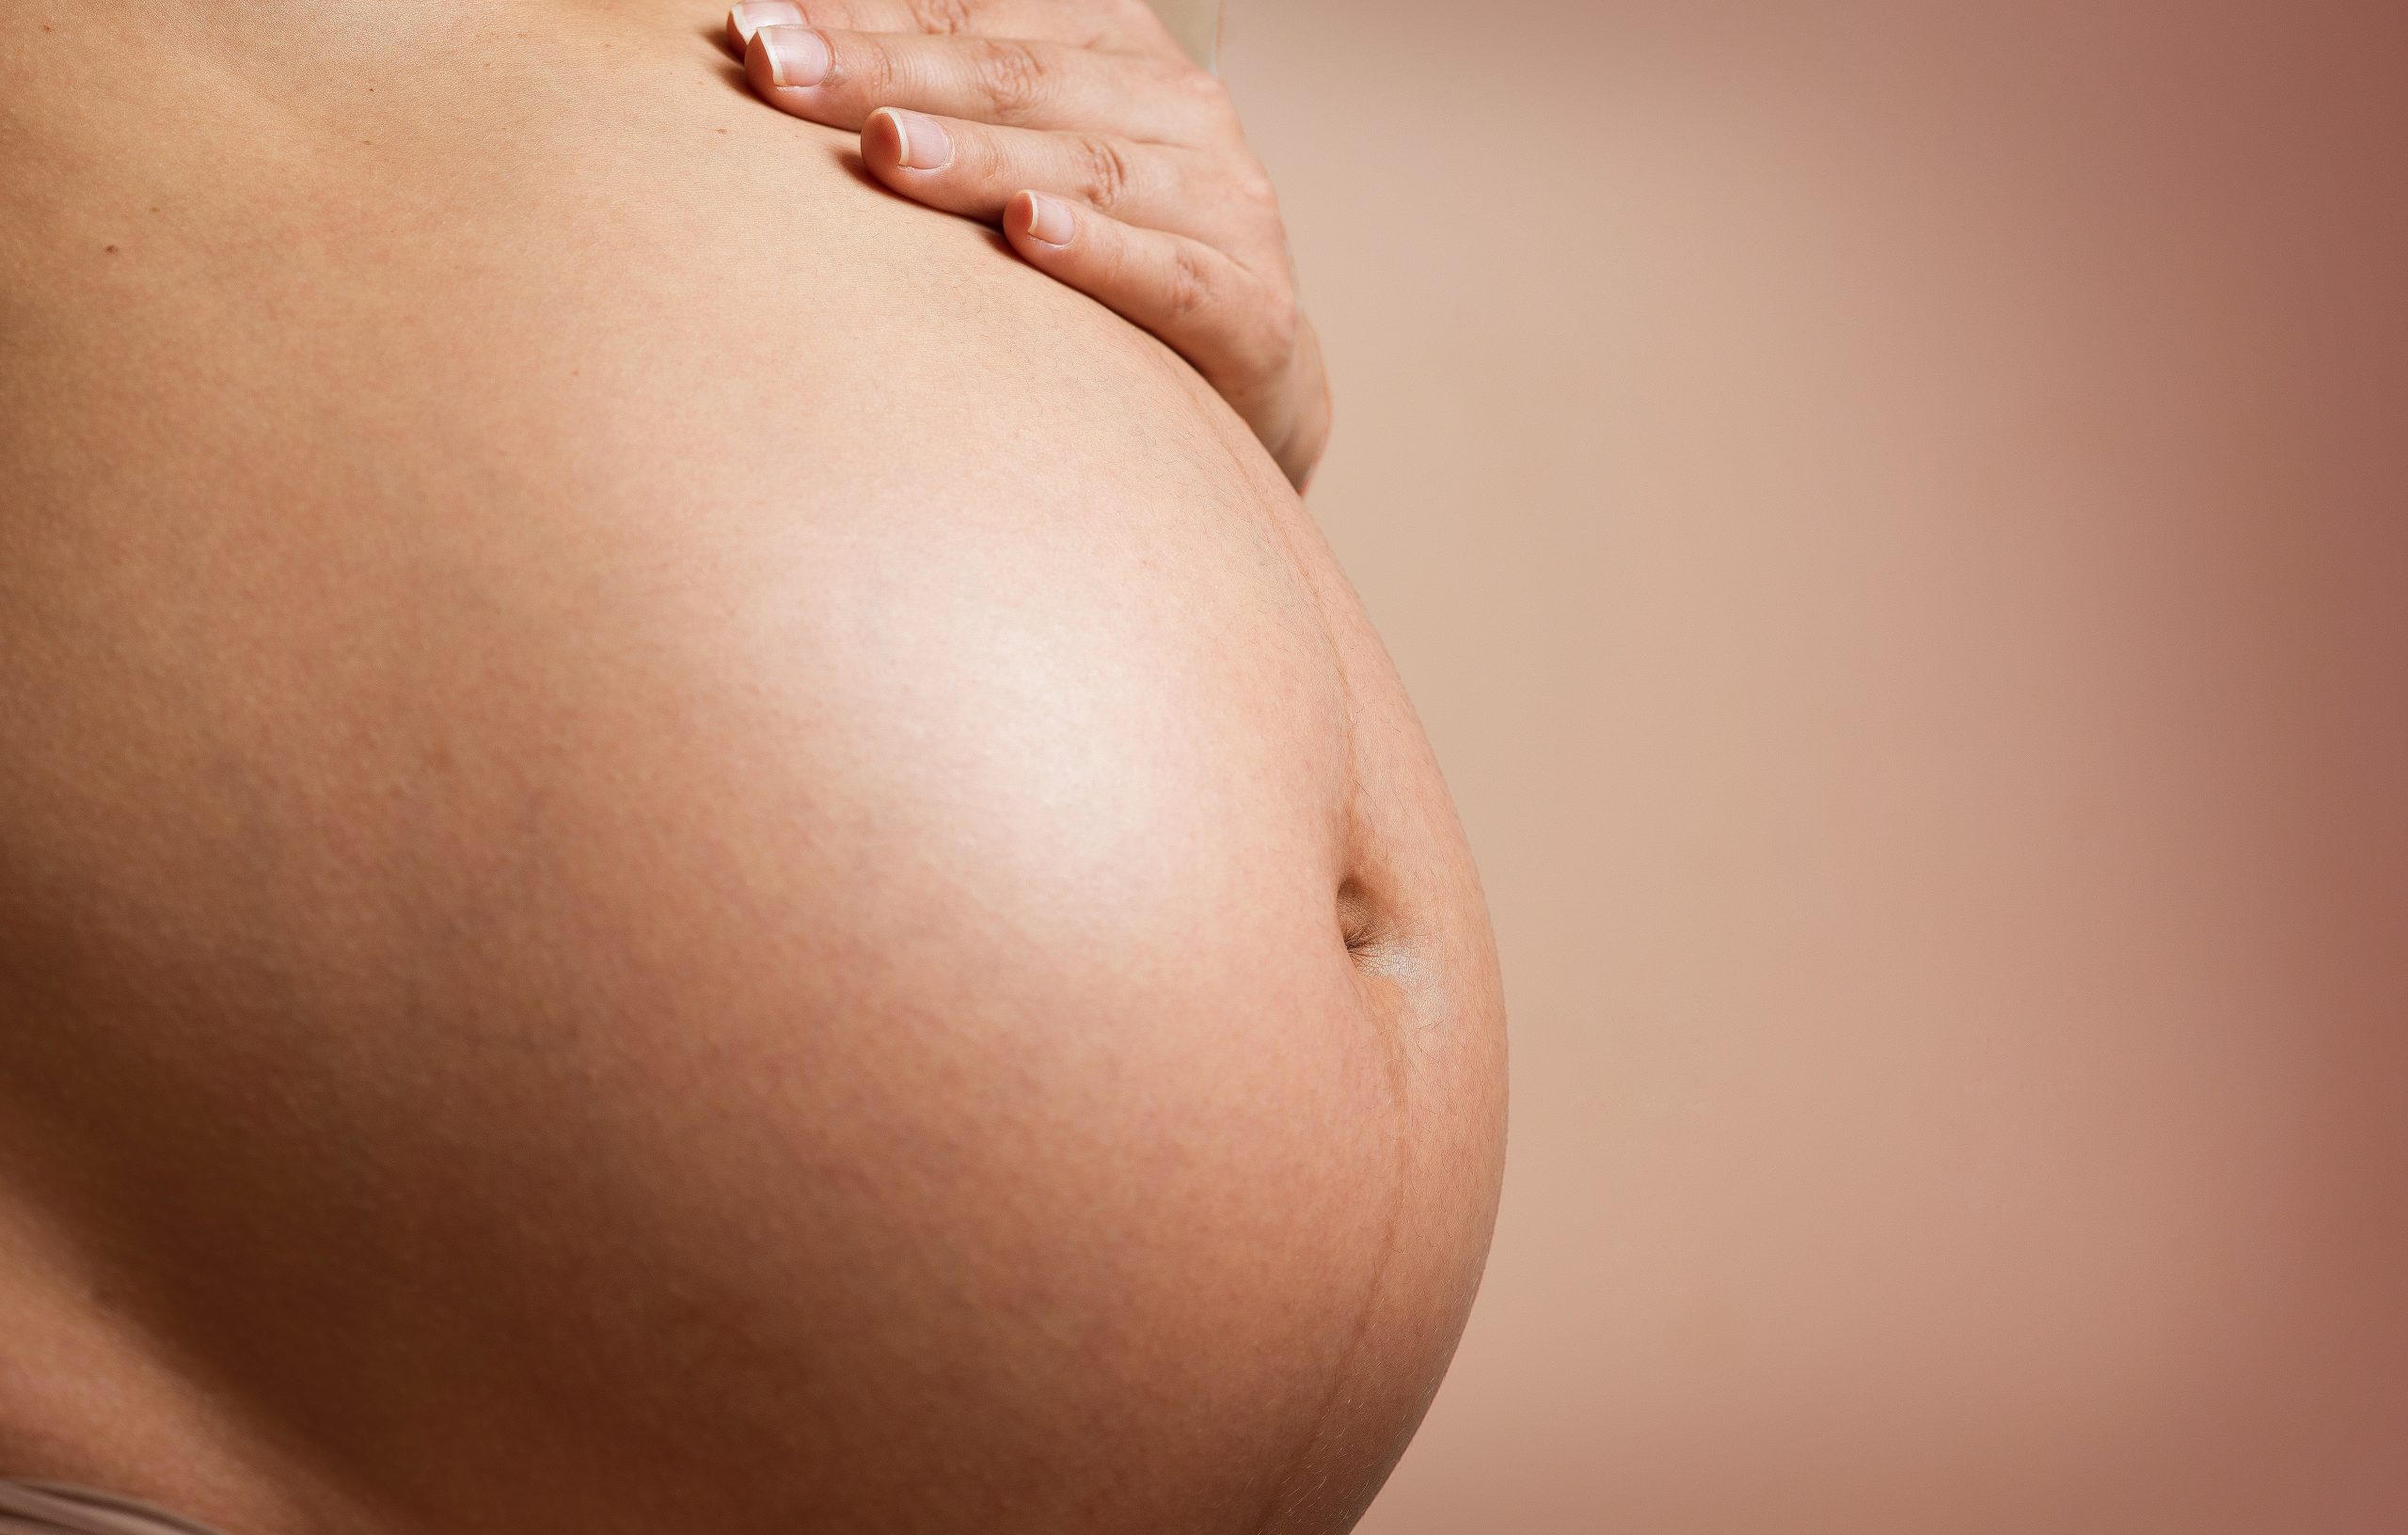 Factores de riesgo de las infecciones de orina en el embarazo